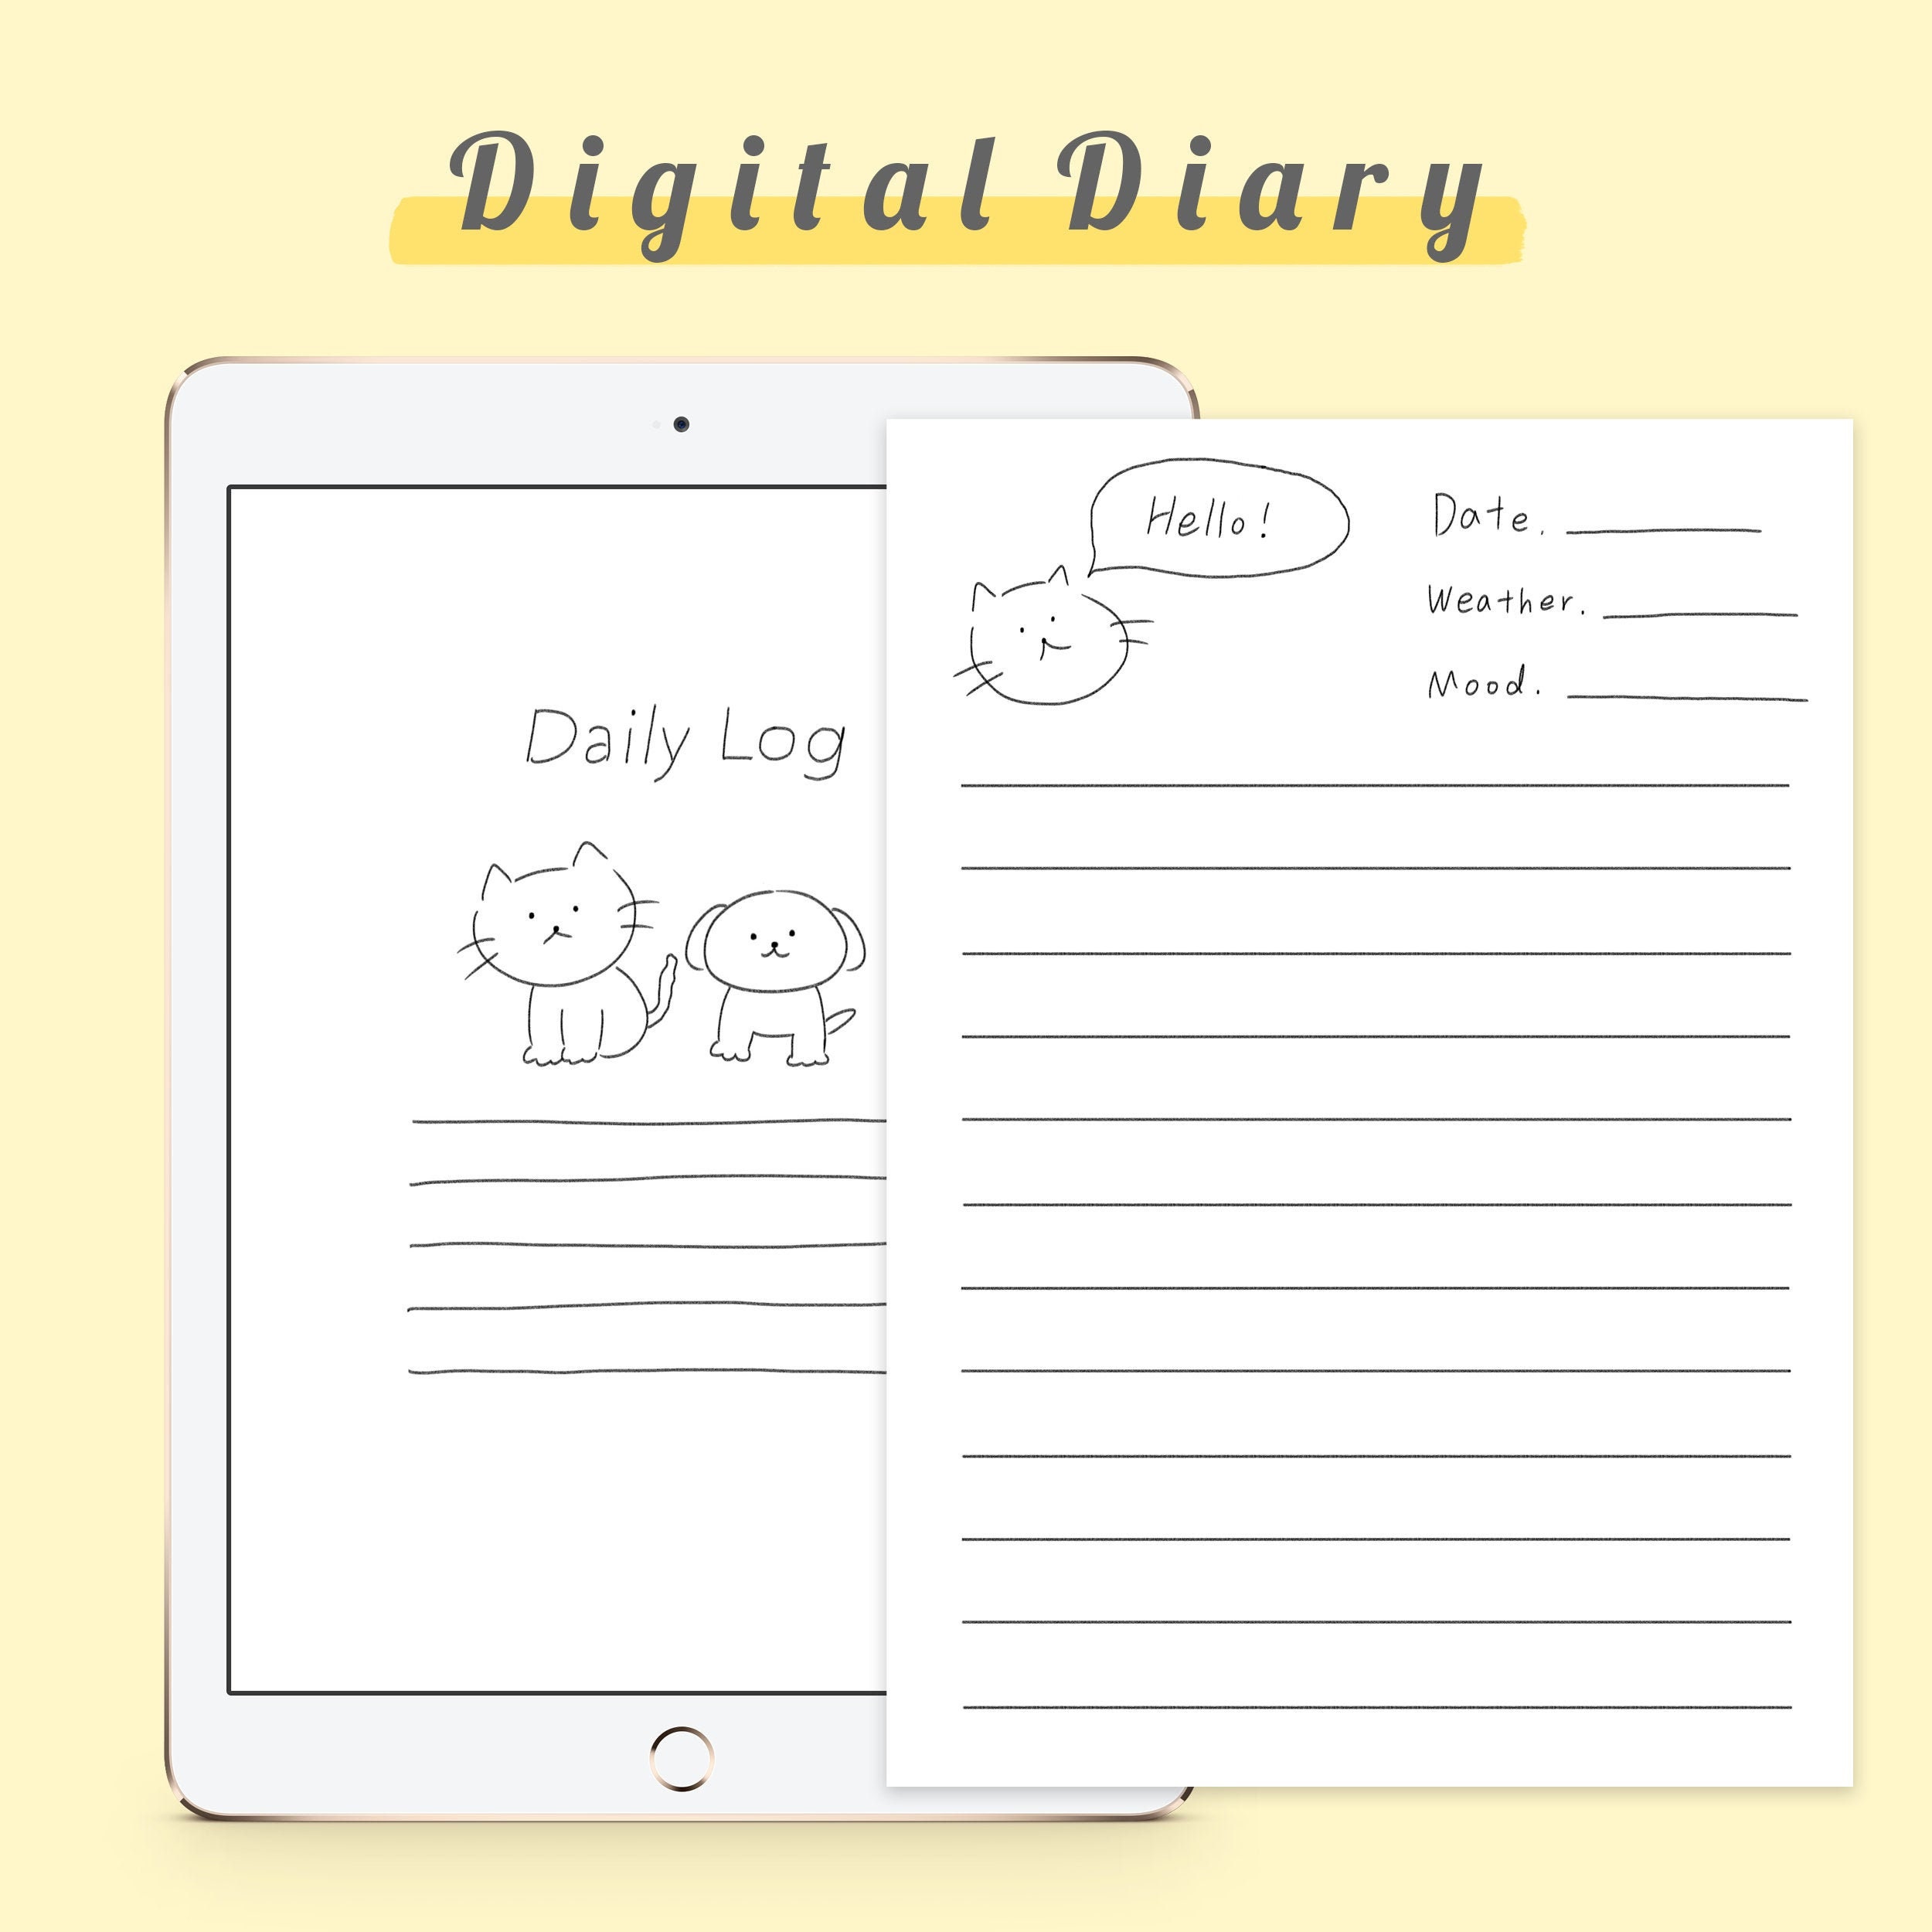 Digital Diary Goodnotes Templates For IPad Etsy UK